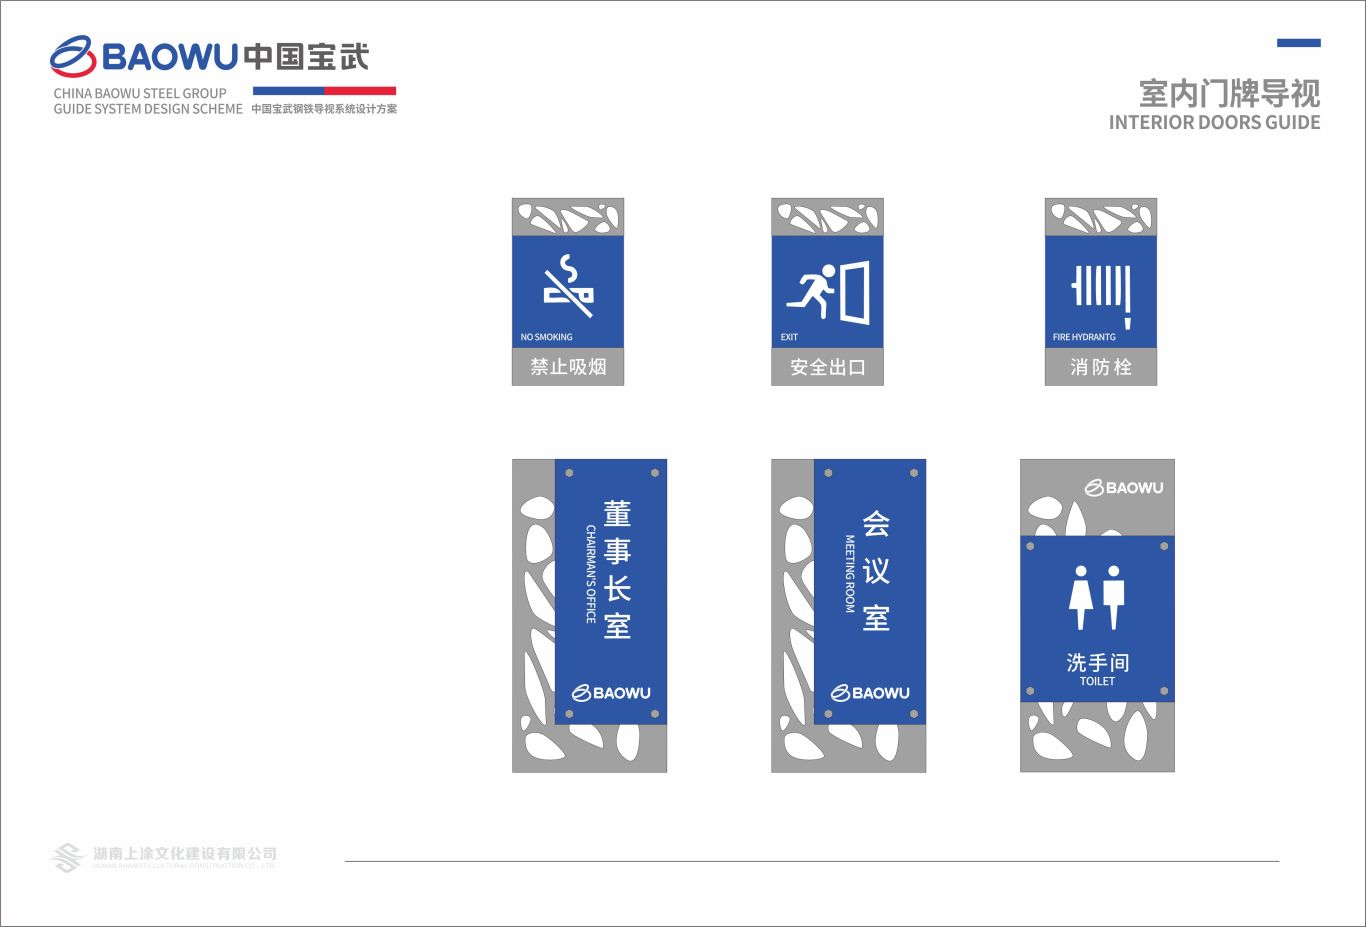 武寶鋼鐵集團導視系統設計圖23